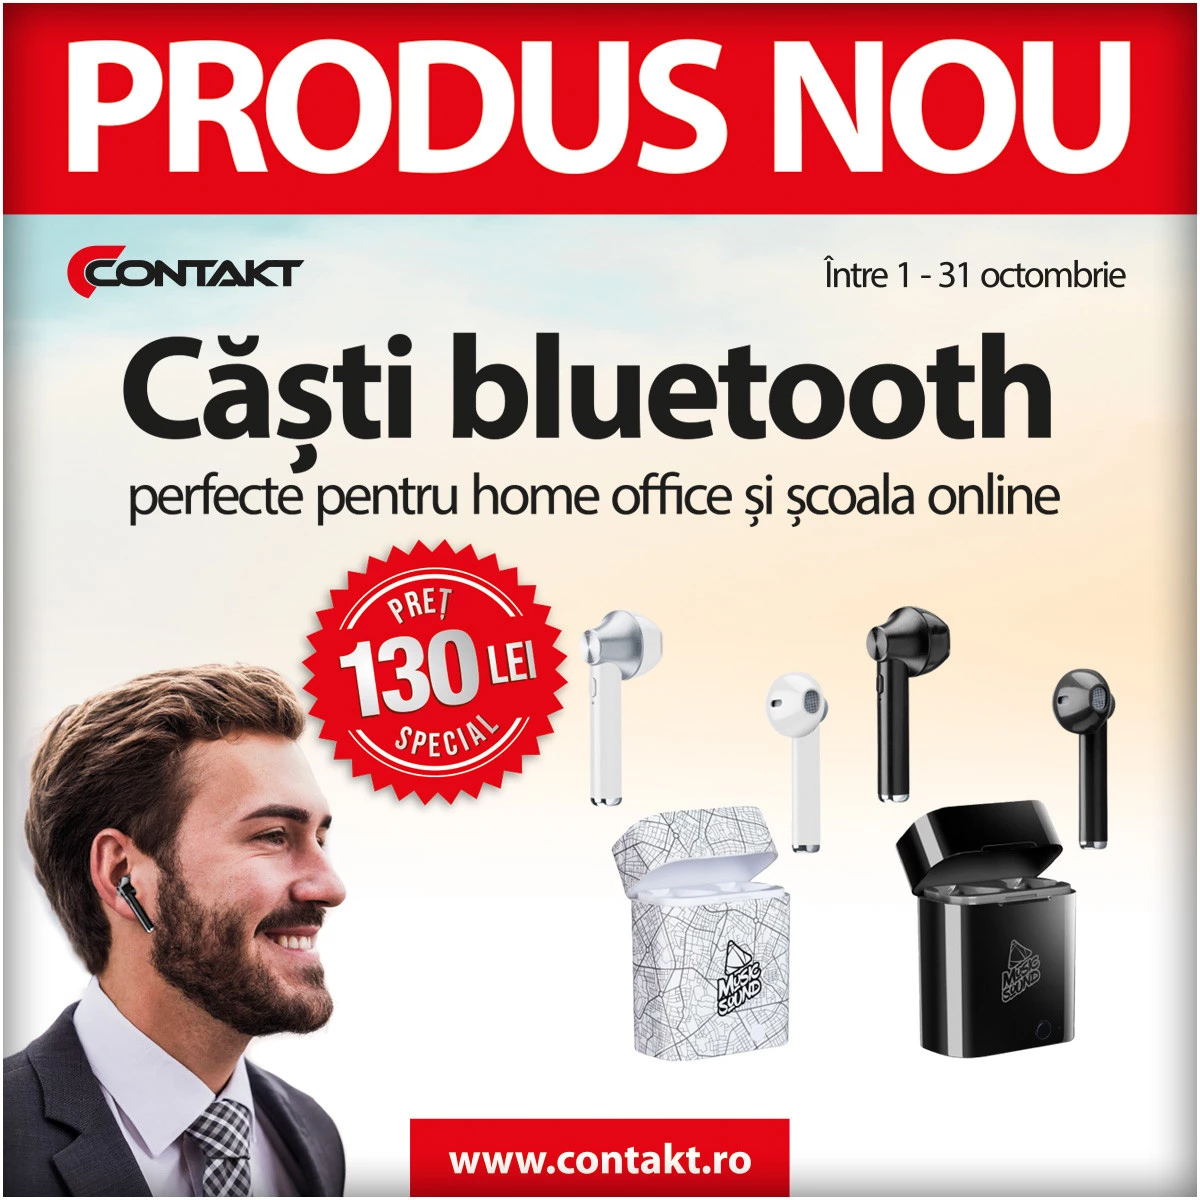 Contakt îți oferă preț special la căștile bluetooth Cellularline